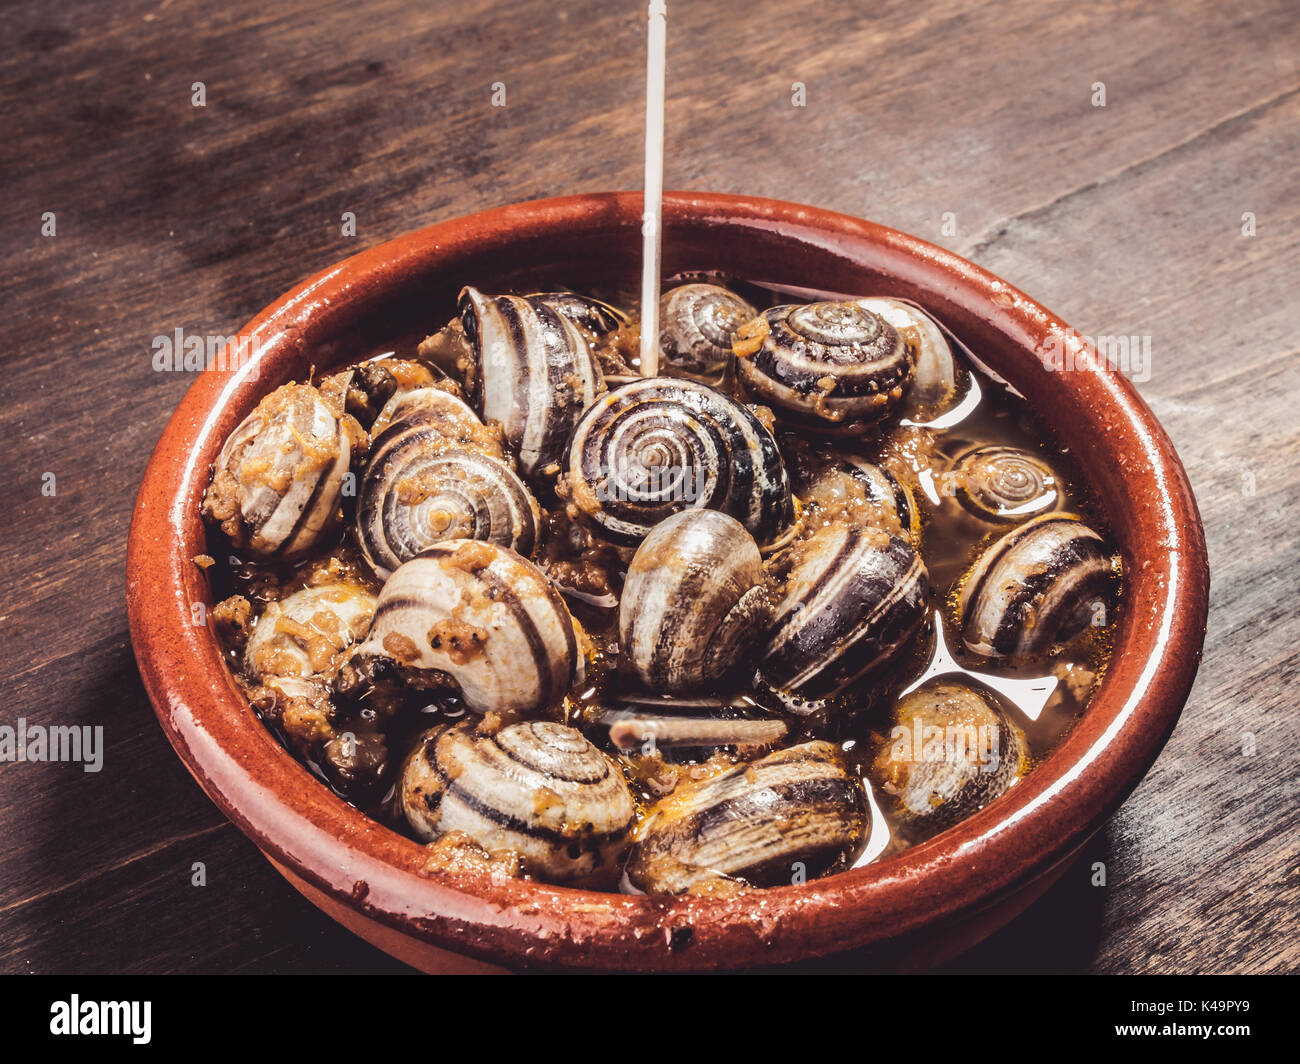 Escargots cuisinés, escargots, rustique servi tapa typiquement espagnol Banque D'Images